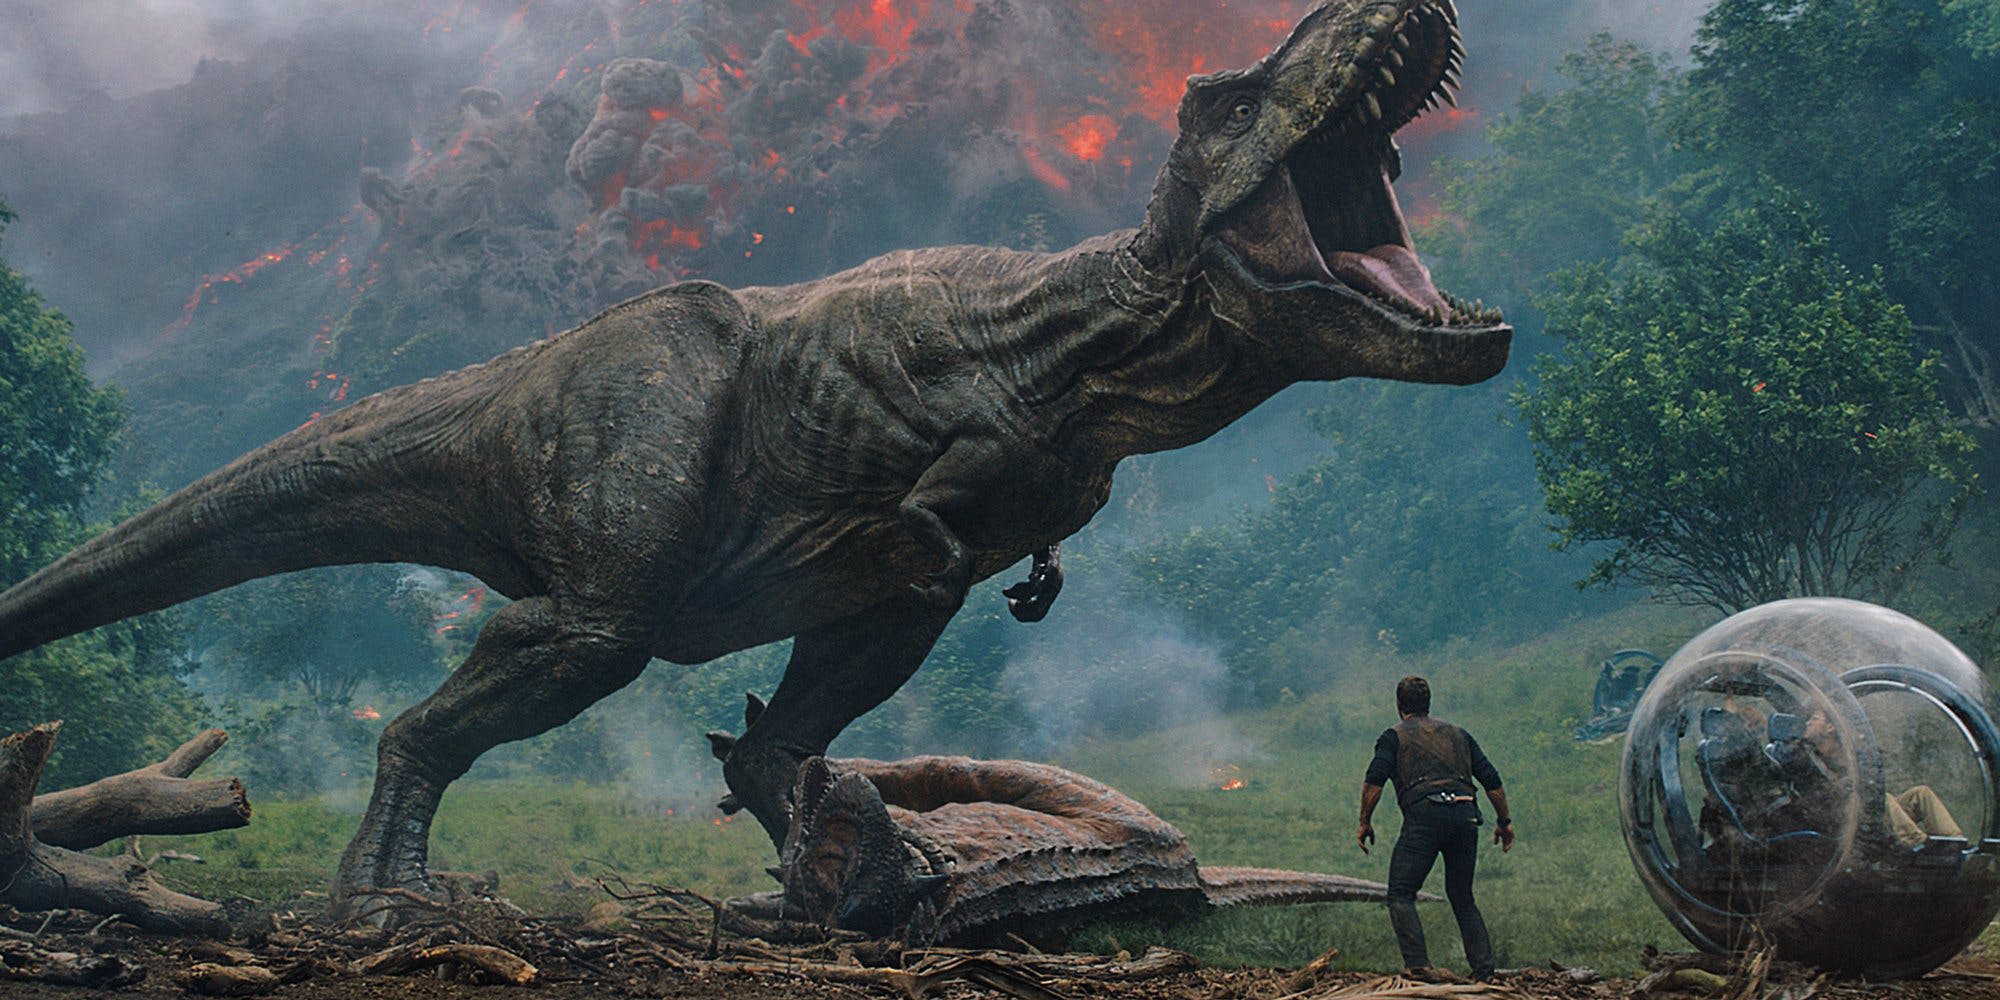  Participa por espectaculares premios de “Jurassic World: El reino caído”